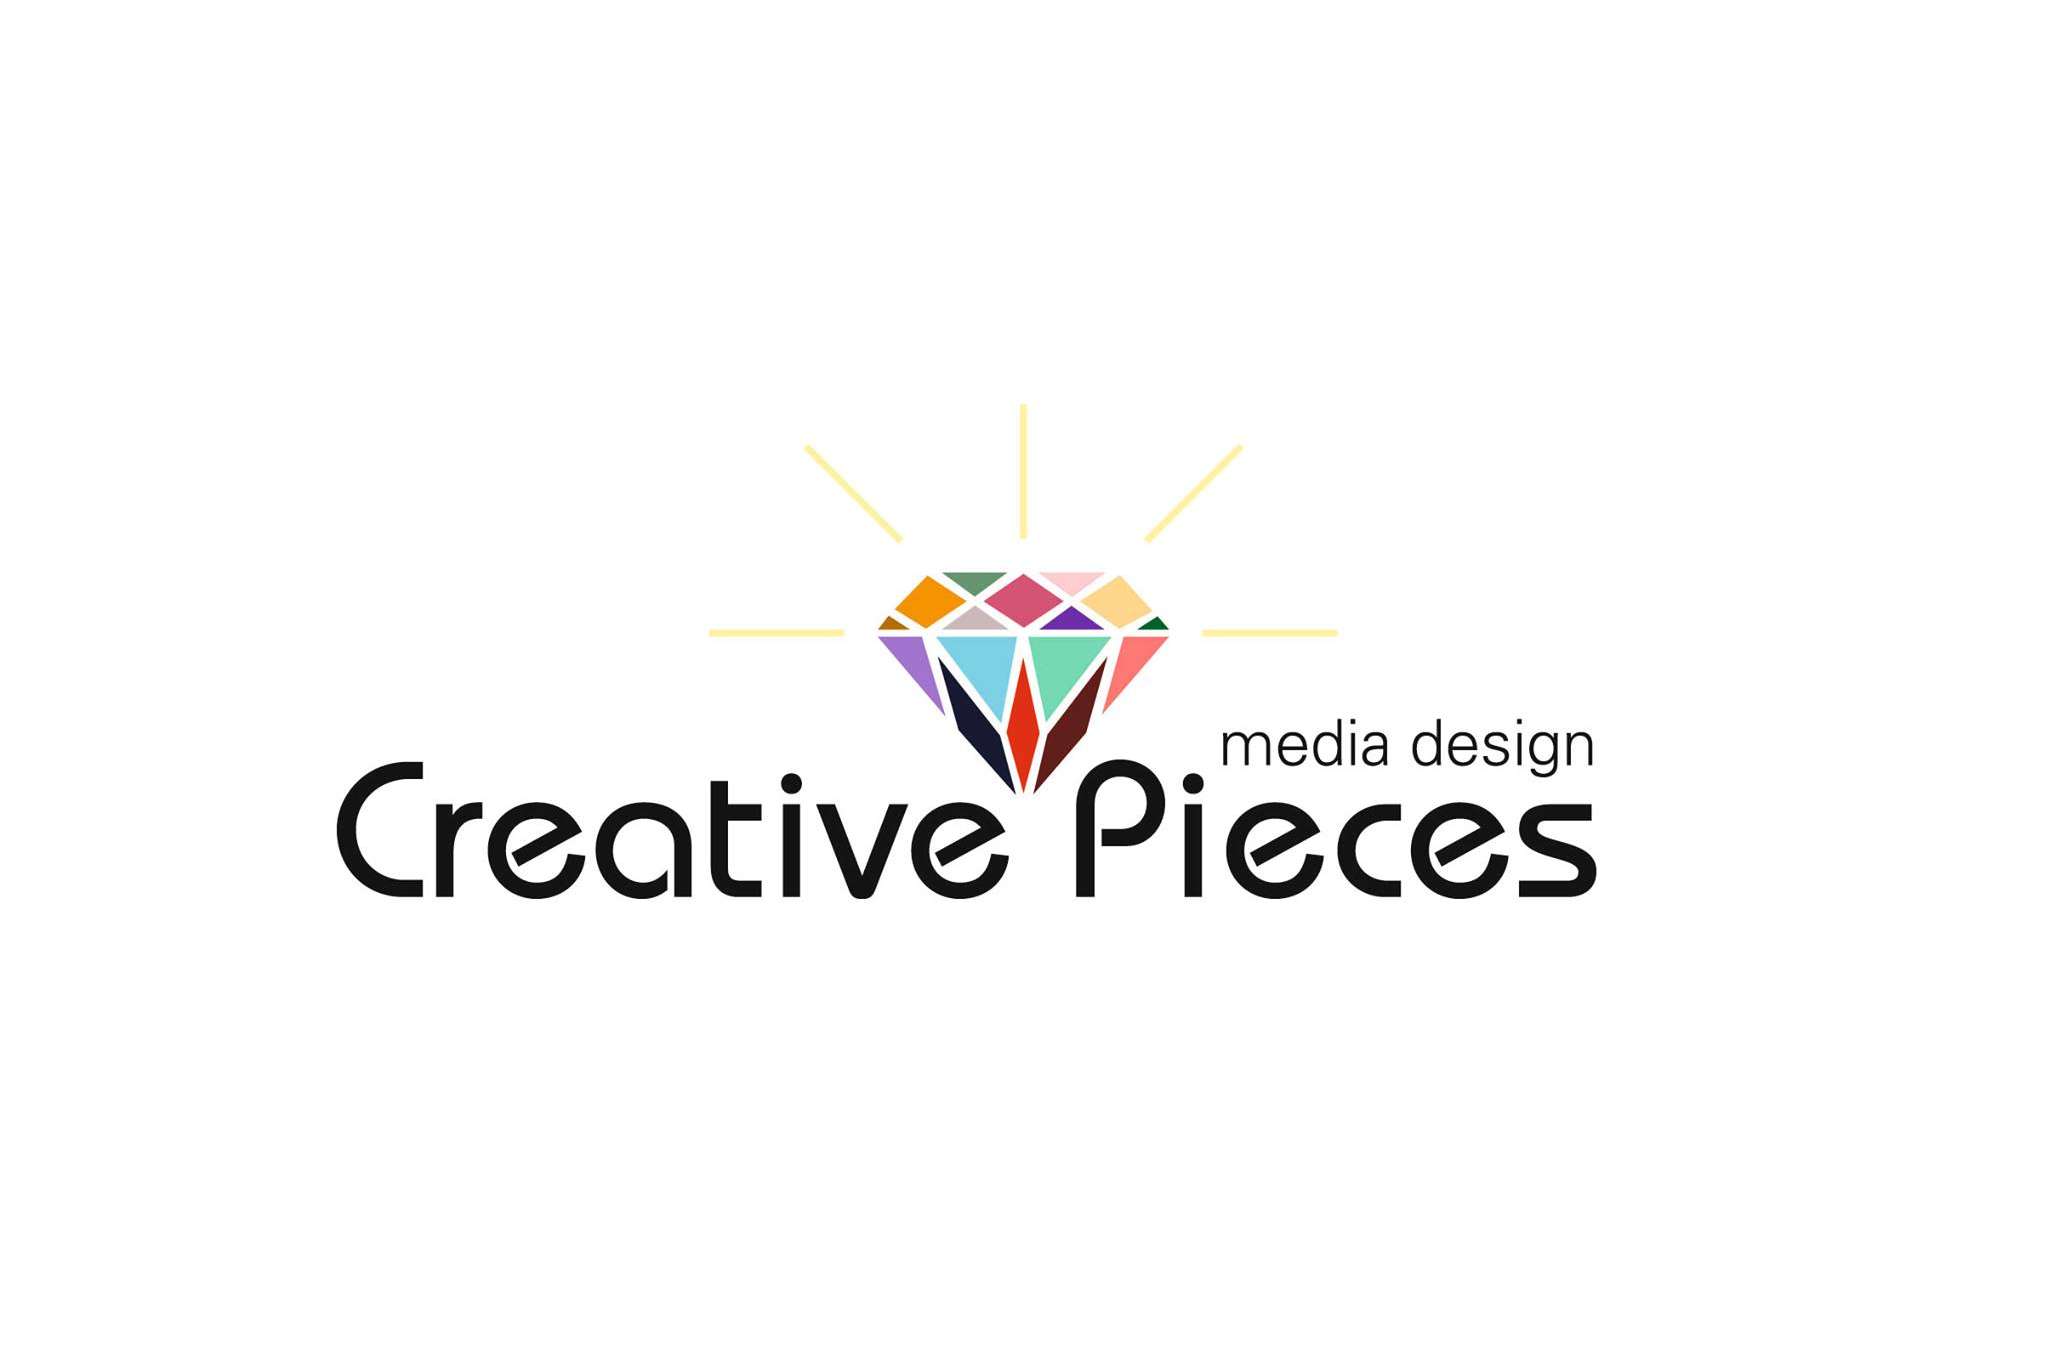 Creative Pieces media design - Hochzeitskarten & Papeterie in Nagold